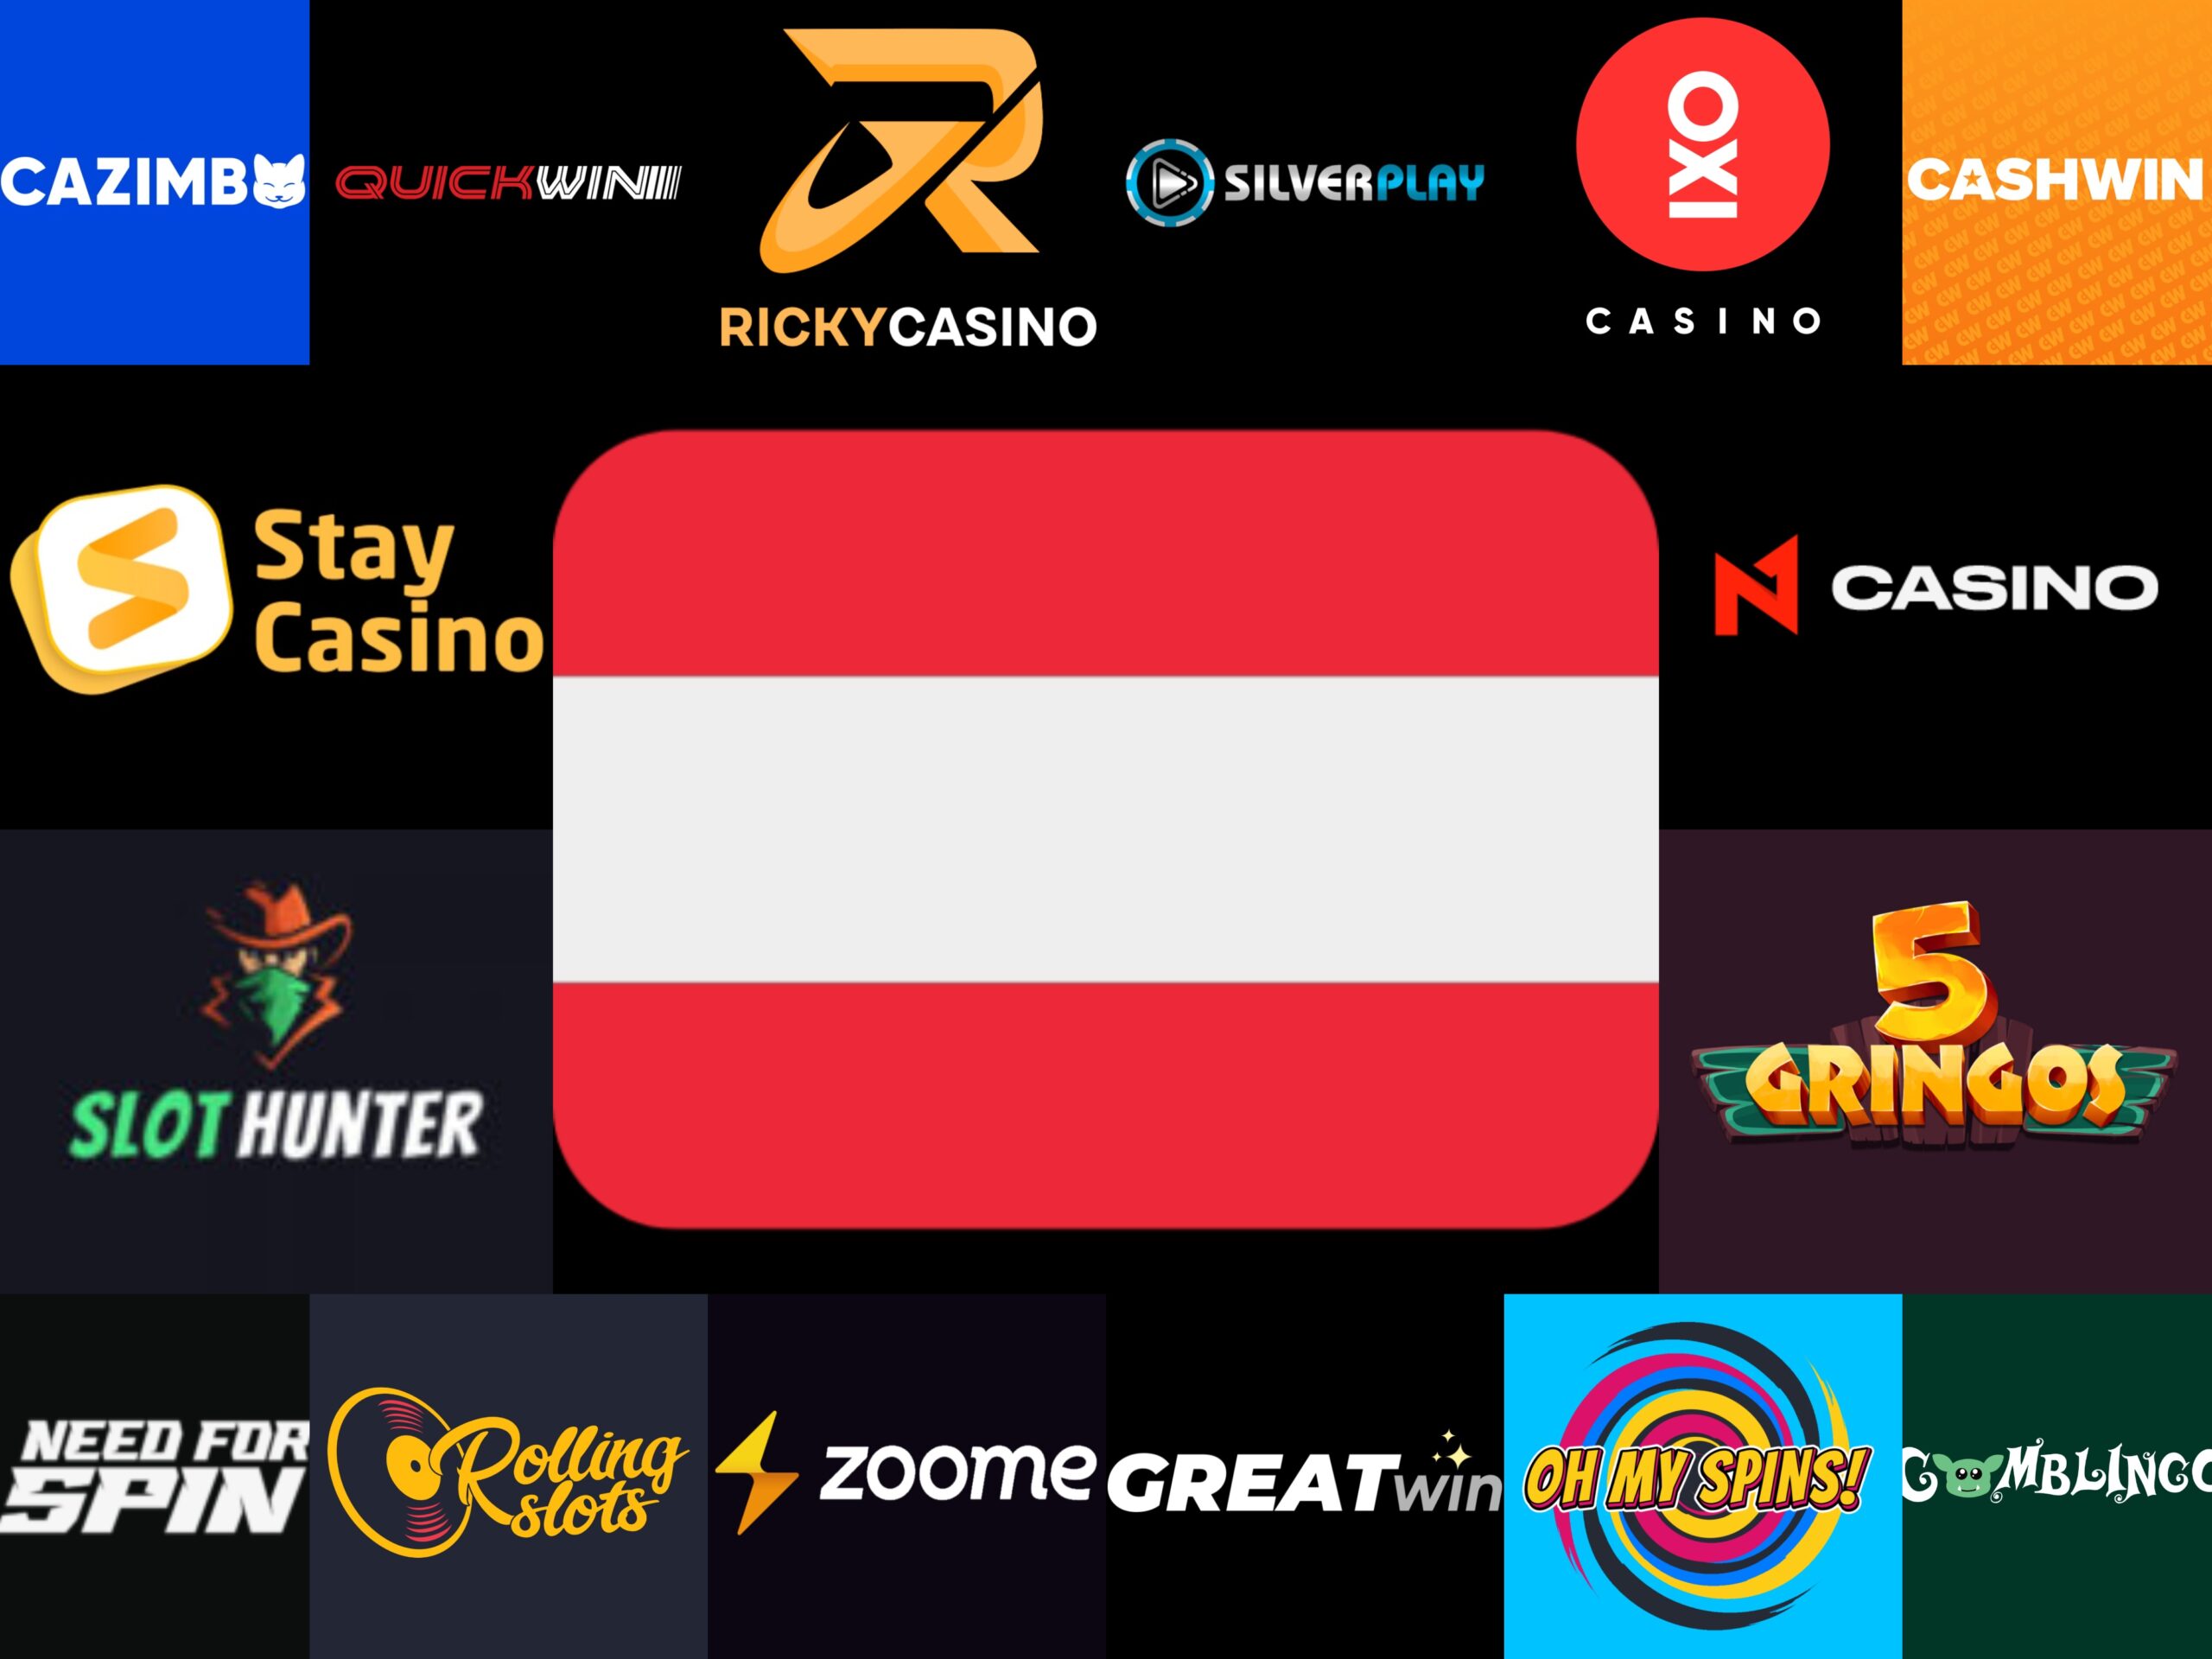 Increase Your österreichische Online Casino In 7 Days